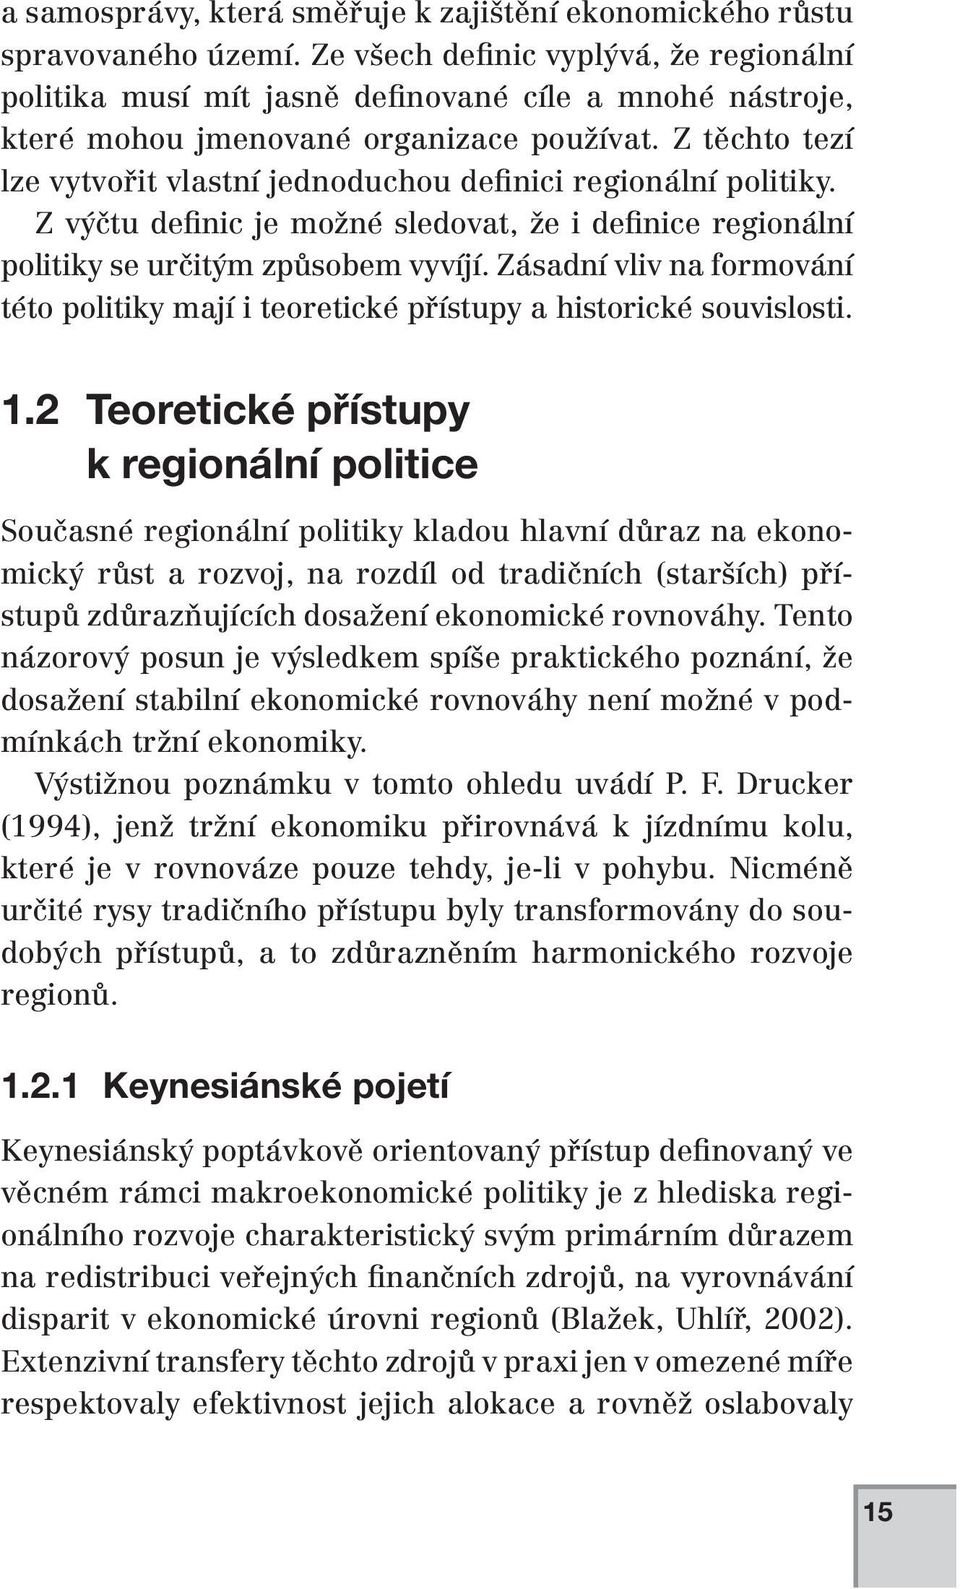 Z těchto tezí lze vytvořit vlastní jednoduchou definici regionální politiky. Z výčtu definic je možné sledovat, že i definice regionální politiky se určitým způsobem vyvíjí.